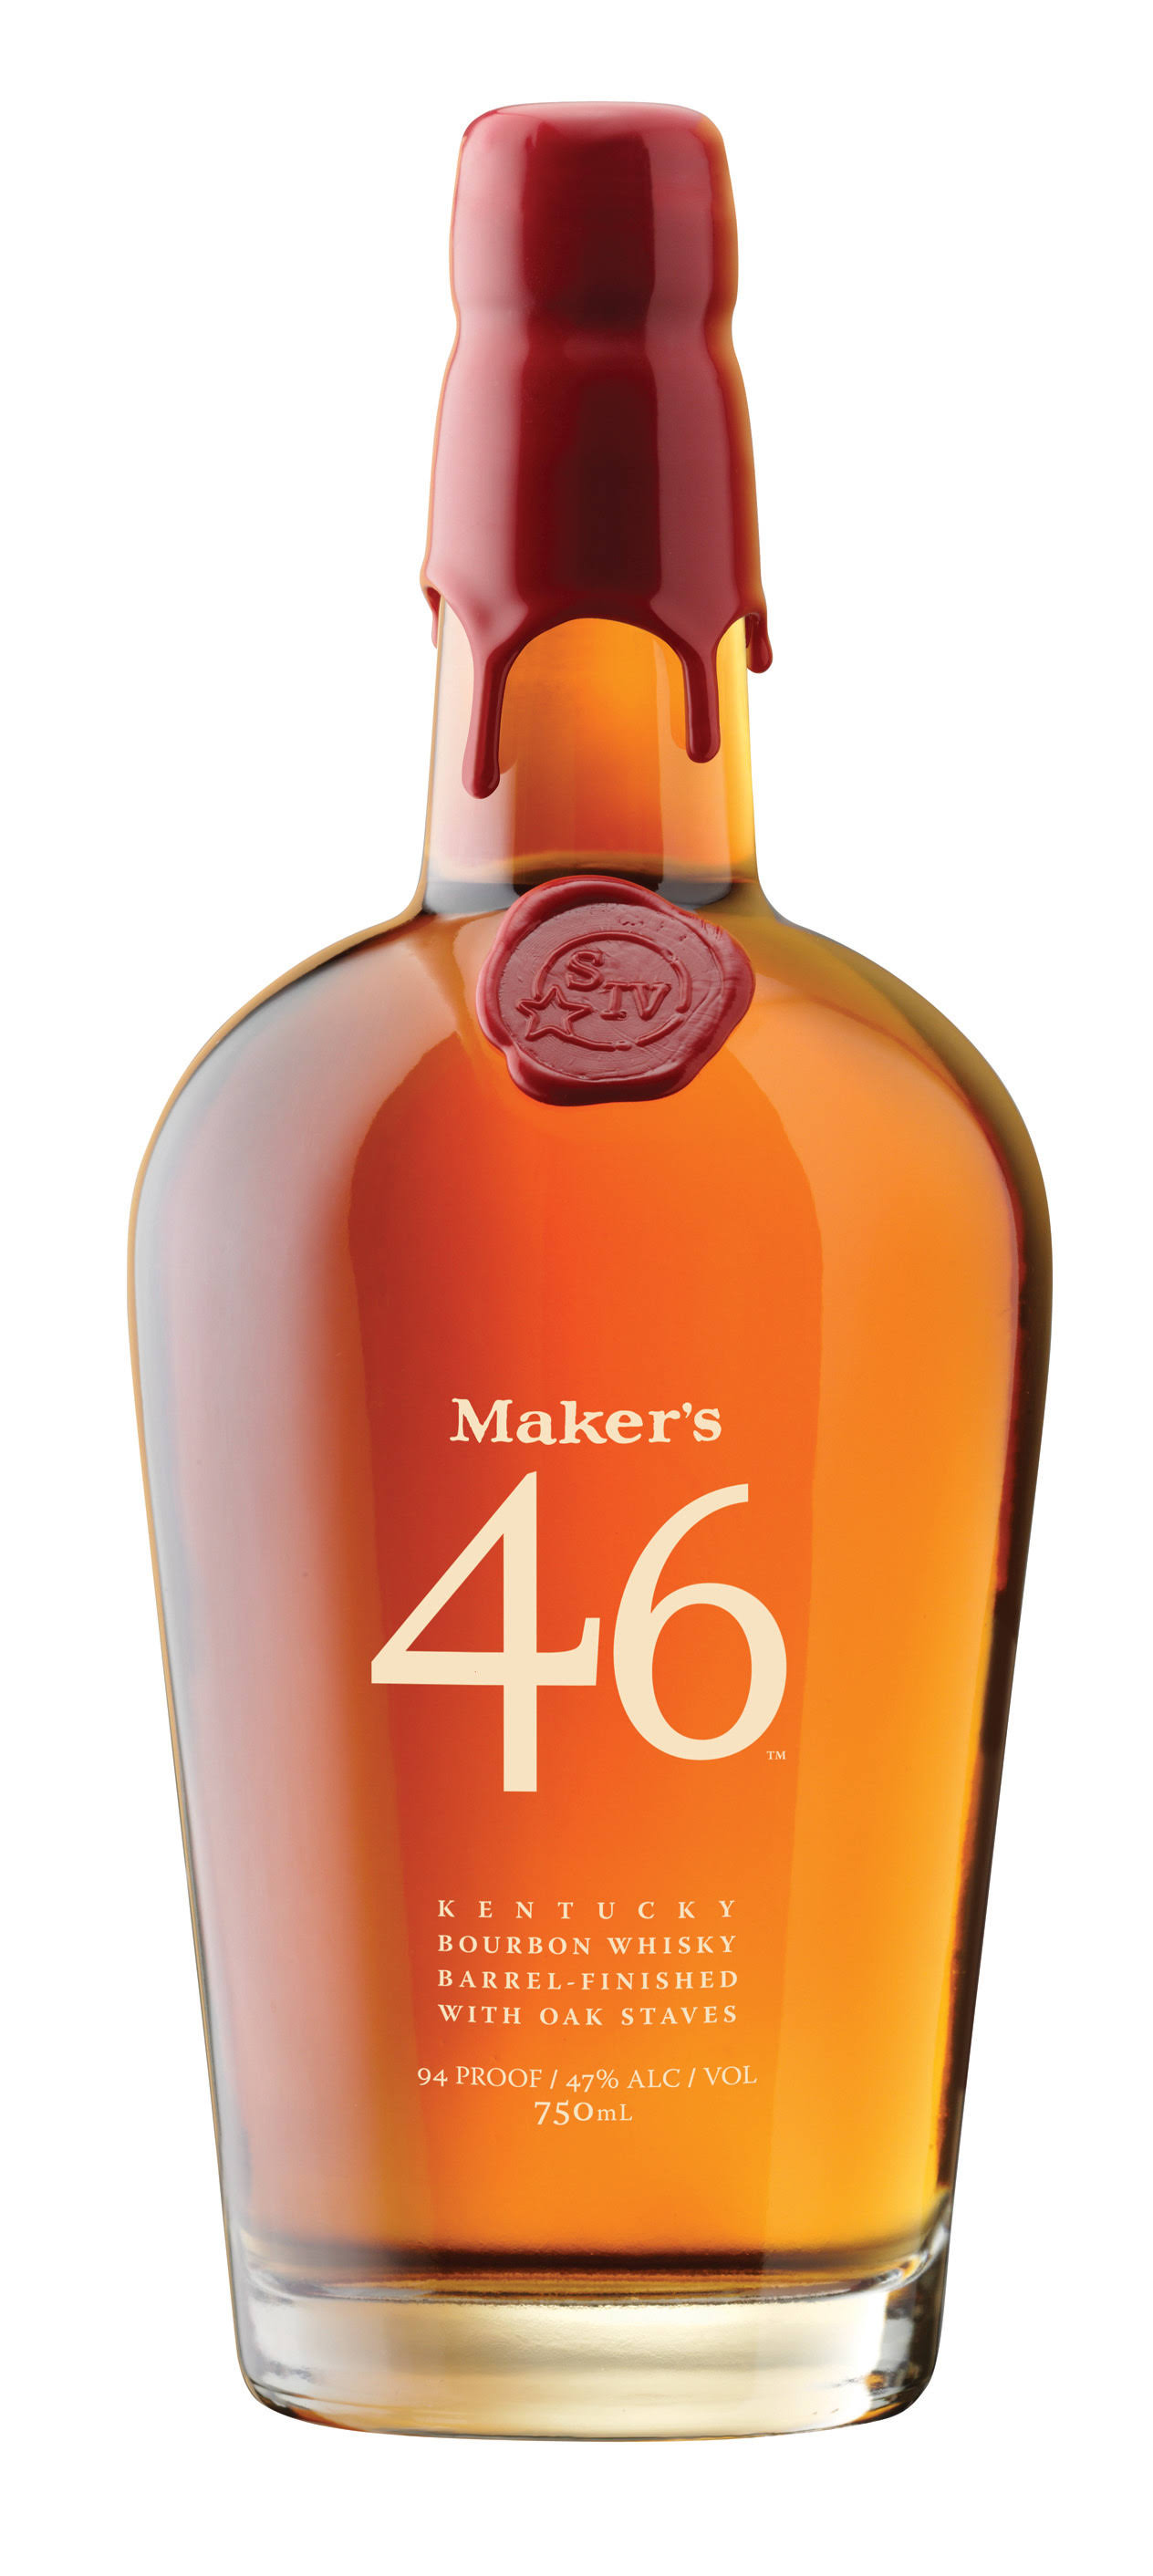 Maker's Mark 46 Kentucky Bourbon Whisky, 700 ml